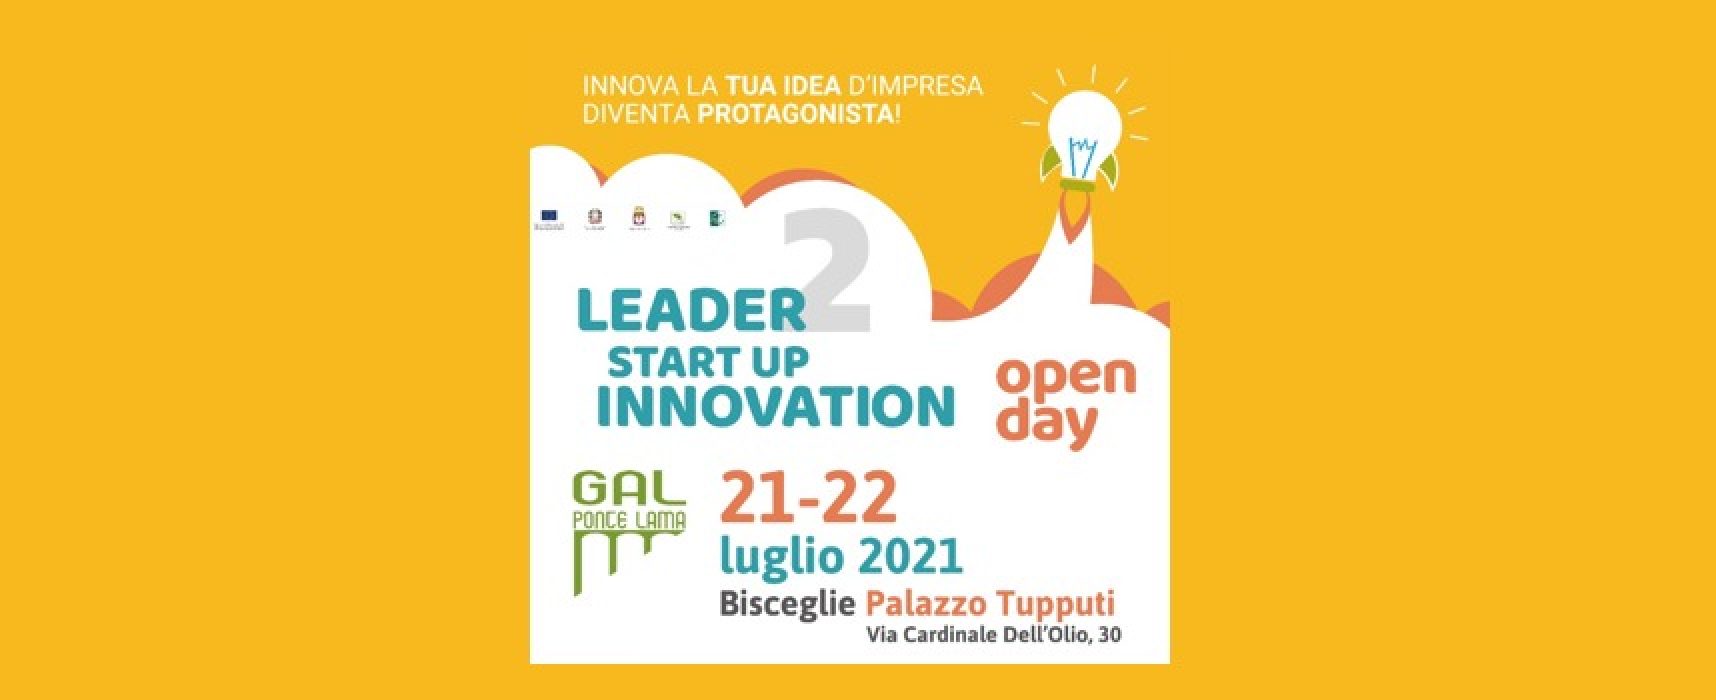 “Leader Start Up Innovation”, il Gal Ponte Lama punta sull’innovazione per la ripresa economica